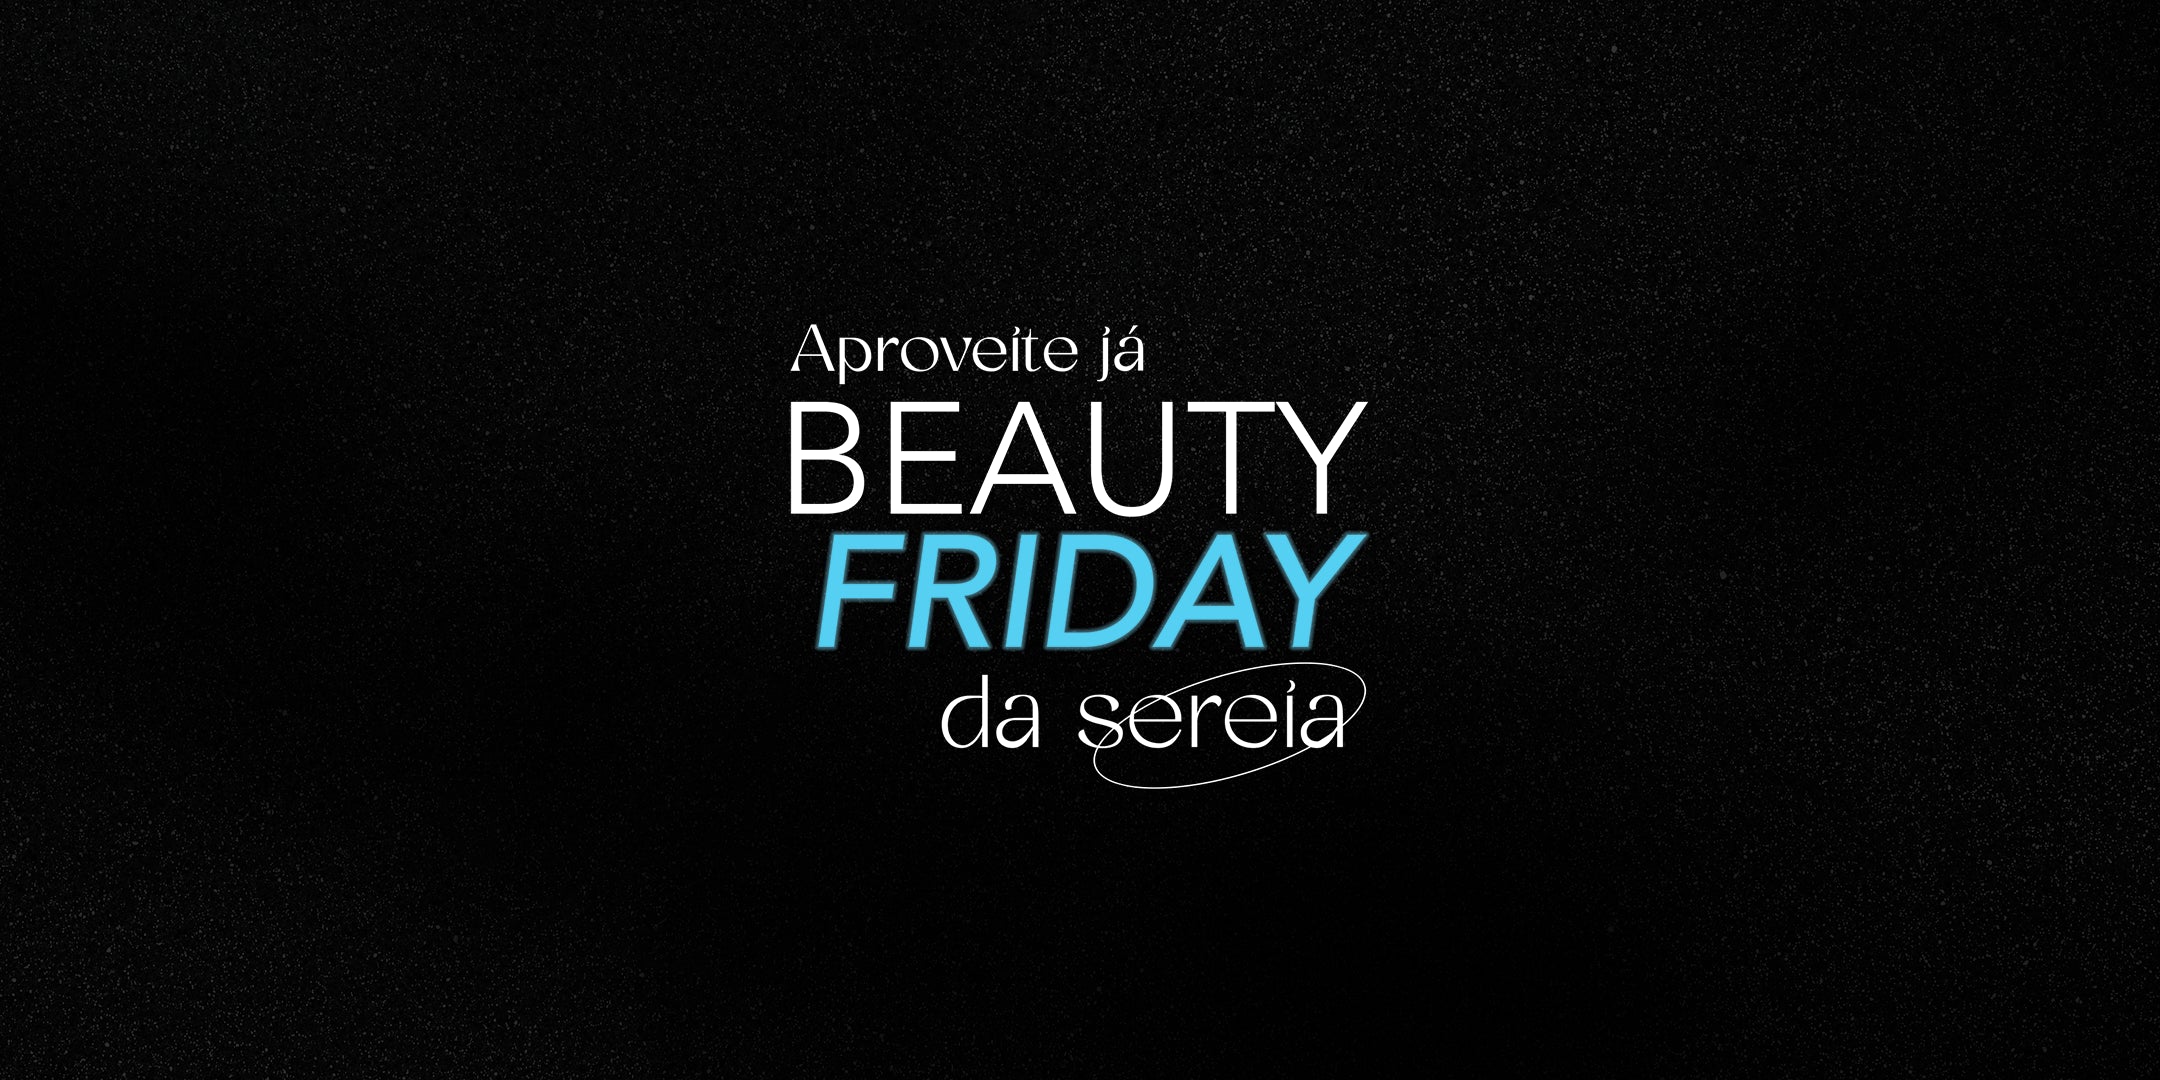 Beauty Friday